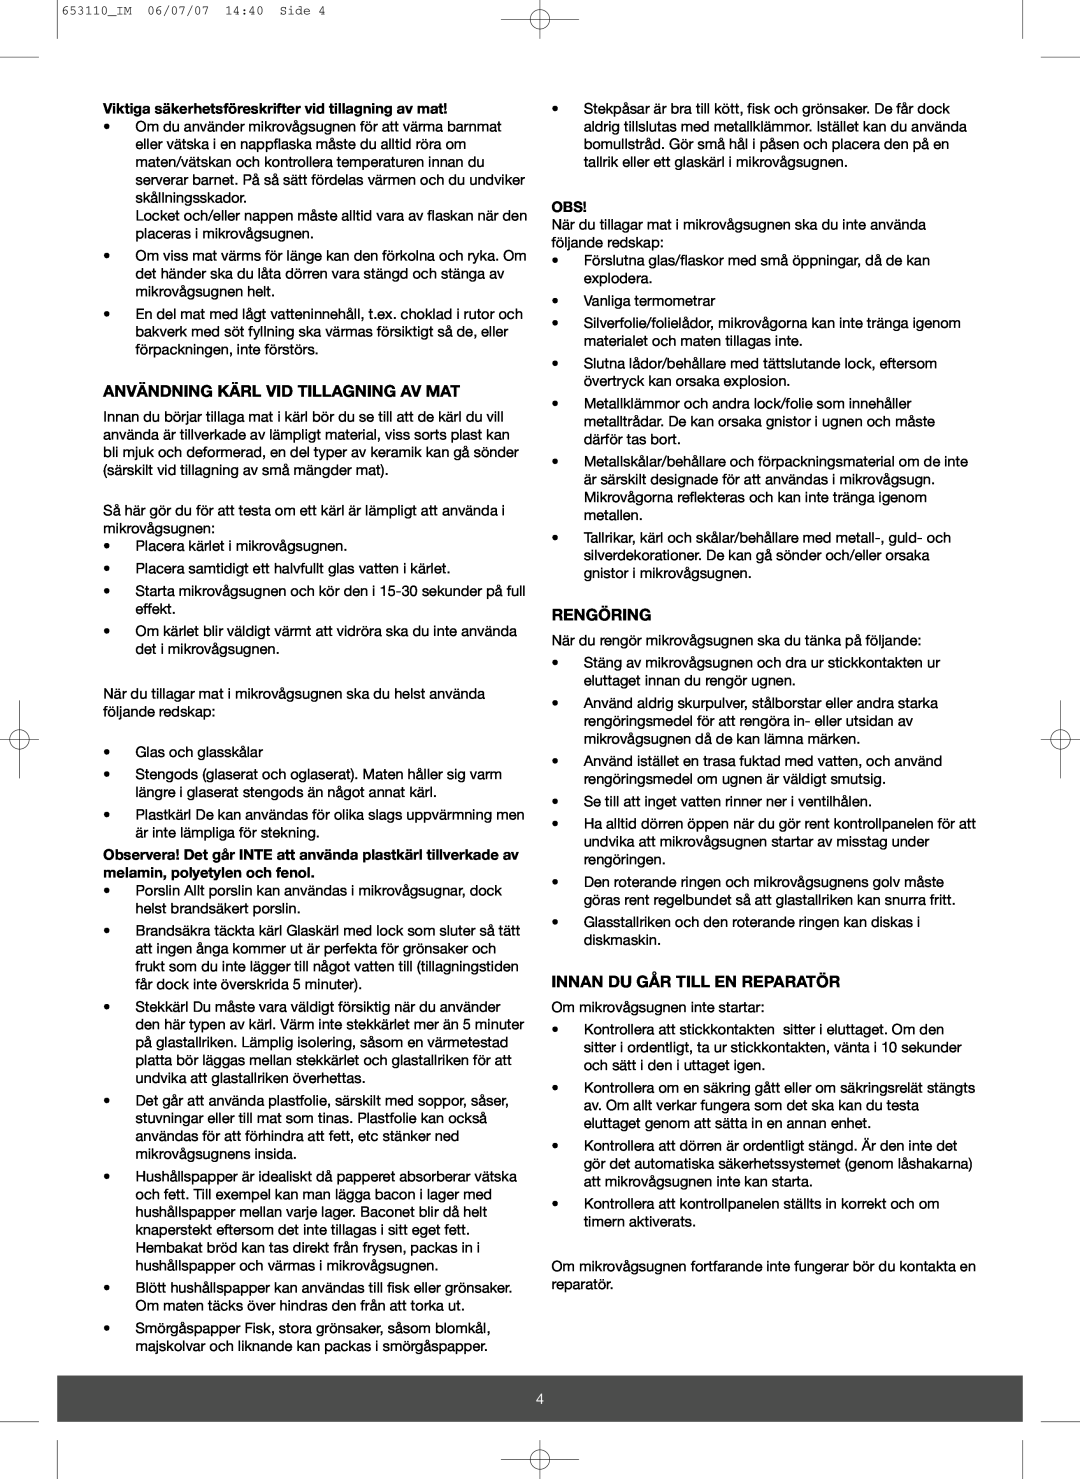 Melissa 653-111 manual Användning Kärl Vid Tillagning Av Mat, Rengöring, Innan Du Går Till En Reparatör 